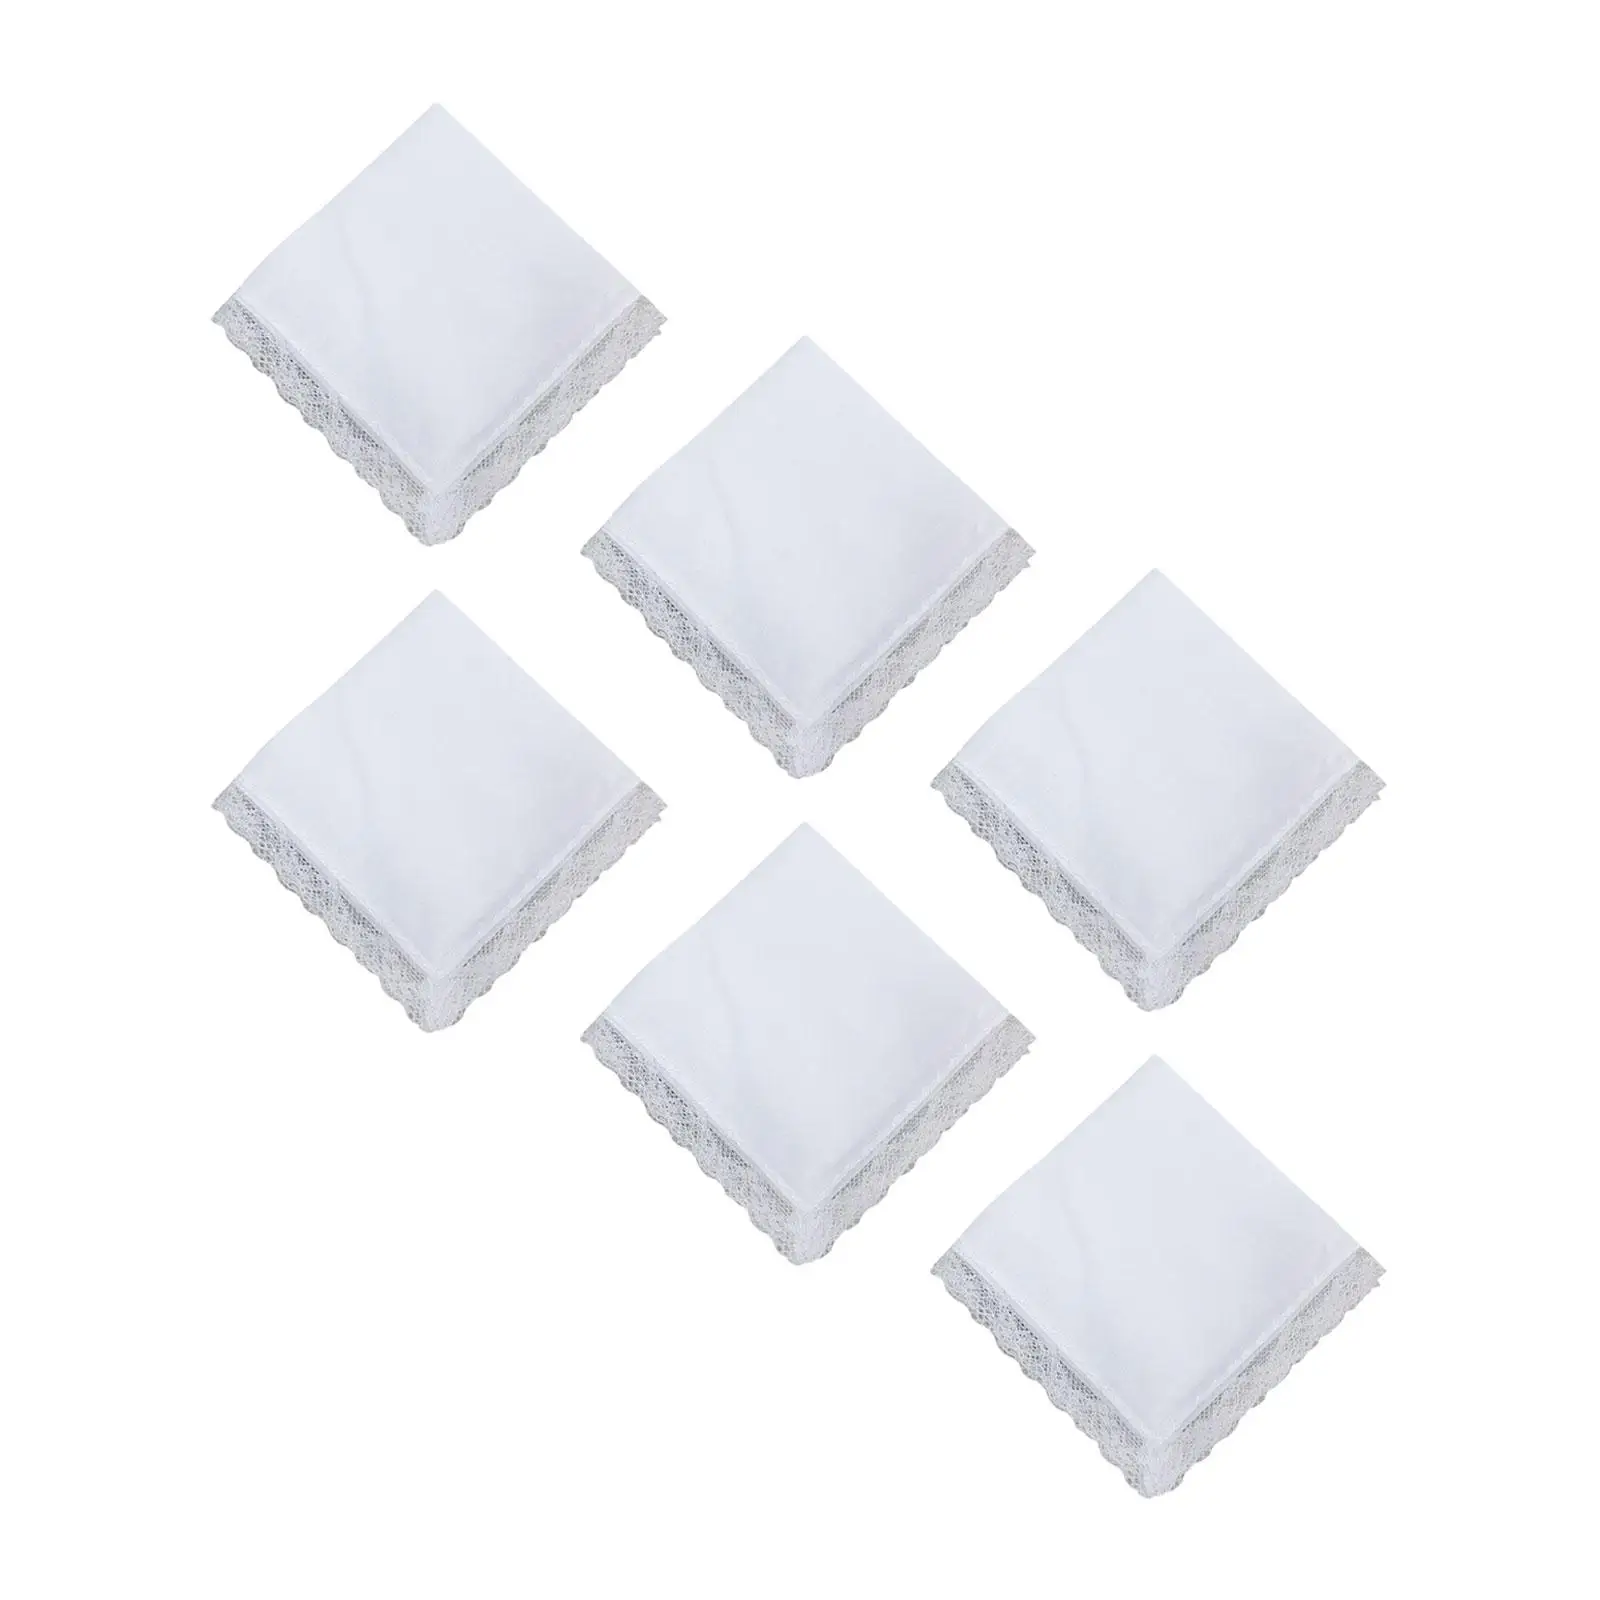 6 Pieces Pure White Cotton Handkerchief Washable DIY Painting with Lace Edge Kerchiefs for Men Ladies Women Children Christmas